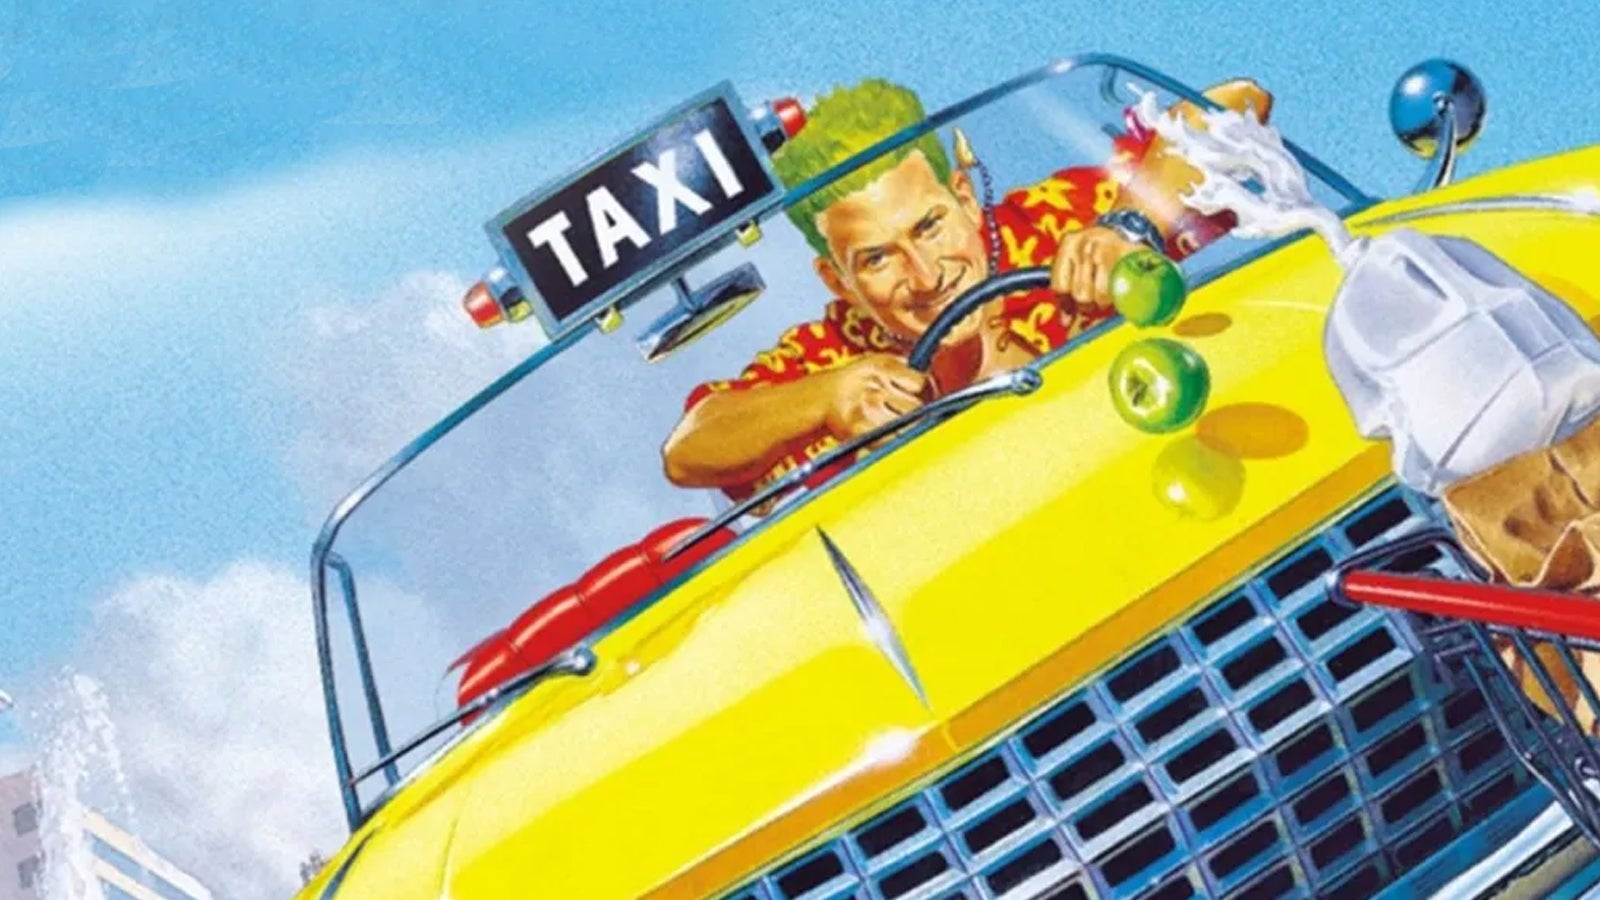 Image for Crazy Taxi, Jet Set Radio big budget reboots in works at Sega